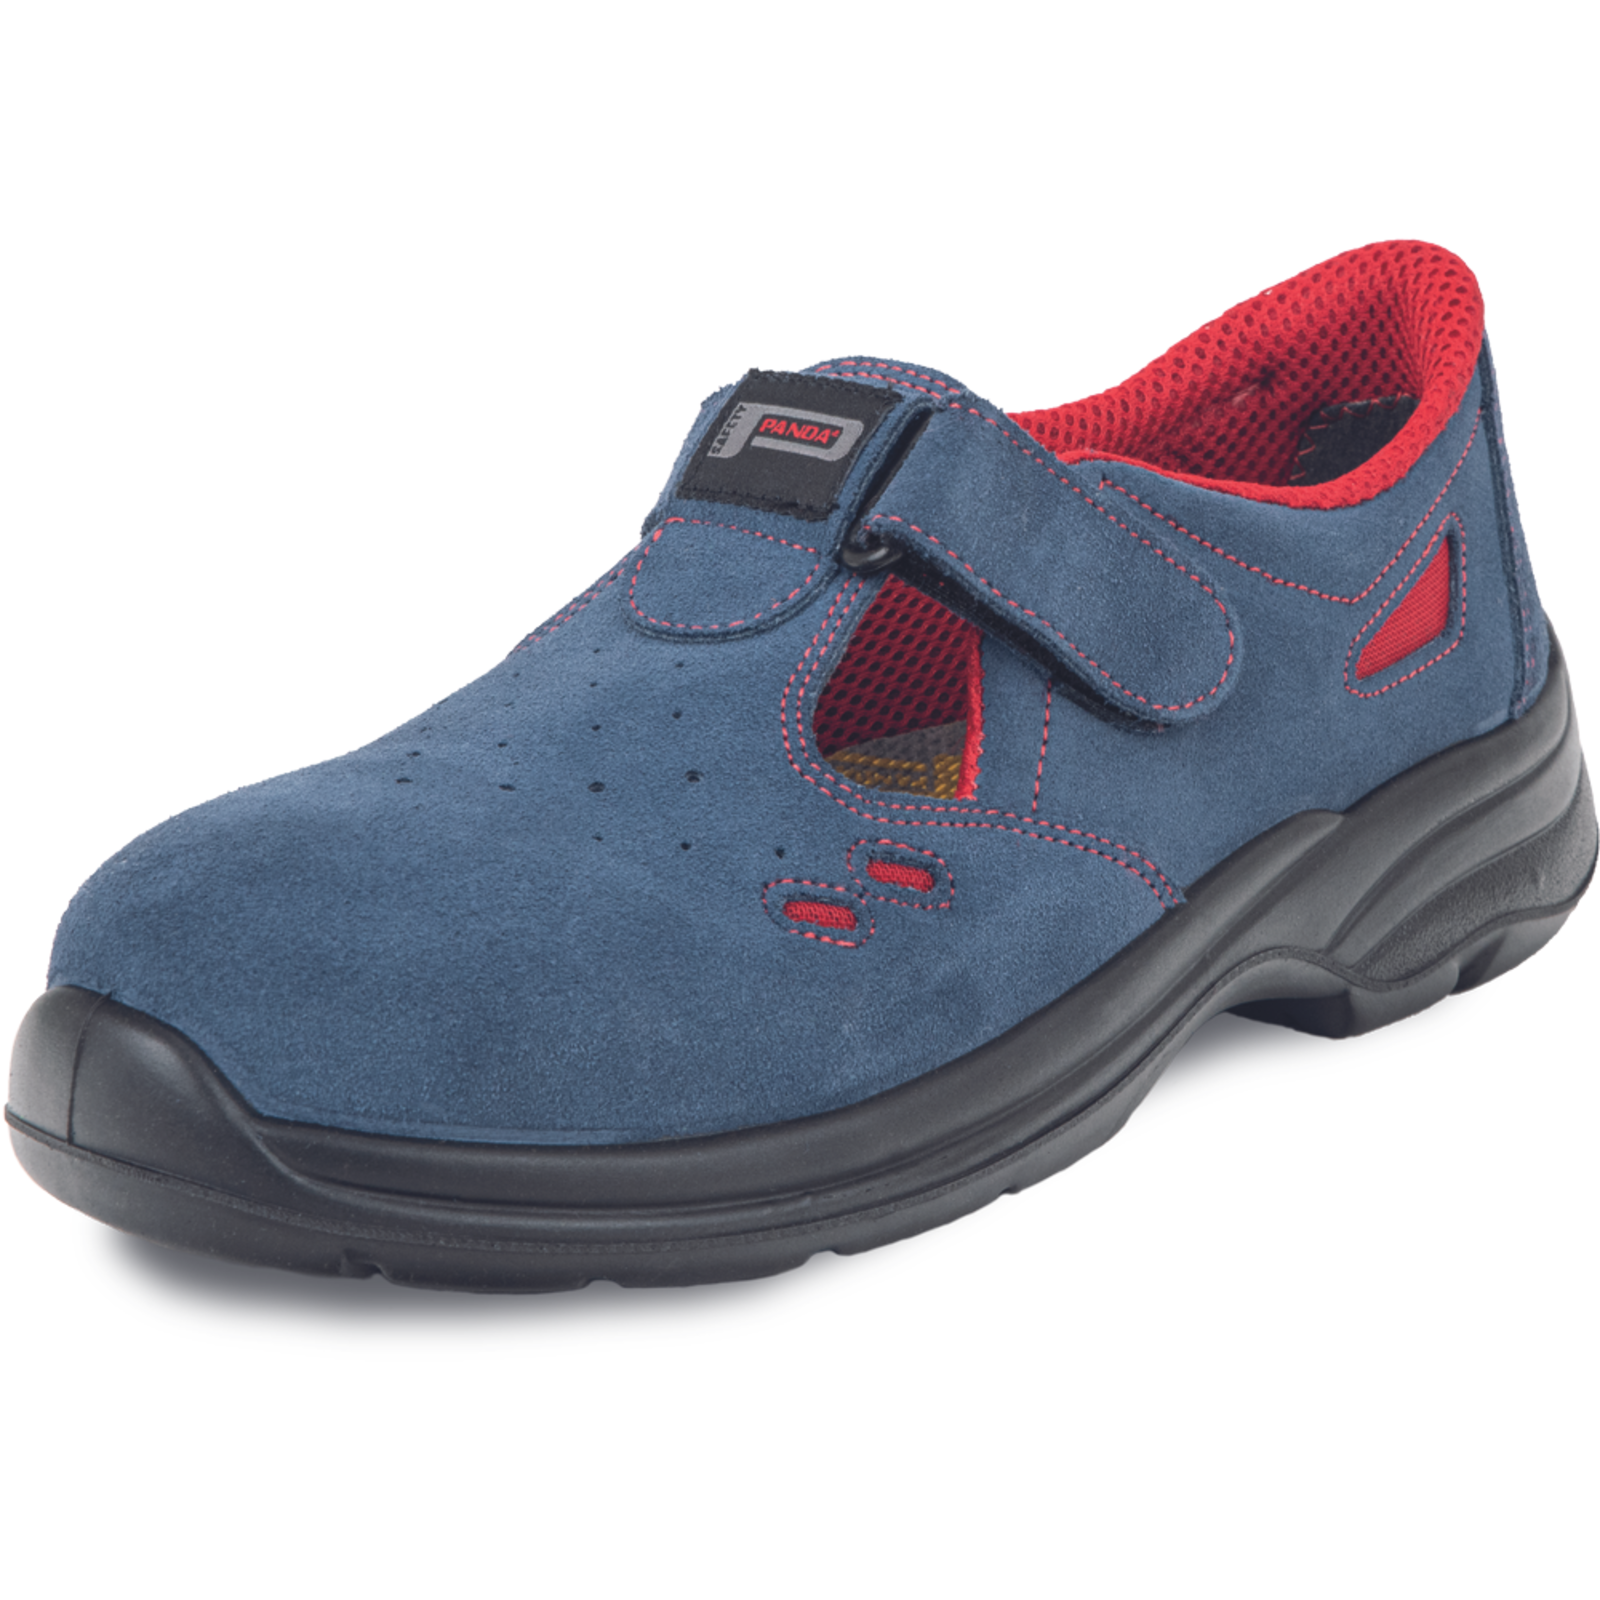 Pracovné bezpečnostné sandále Panda Ringo MF S1 SRC - veľkosť: 36, farba: modrá/červená